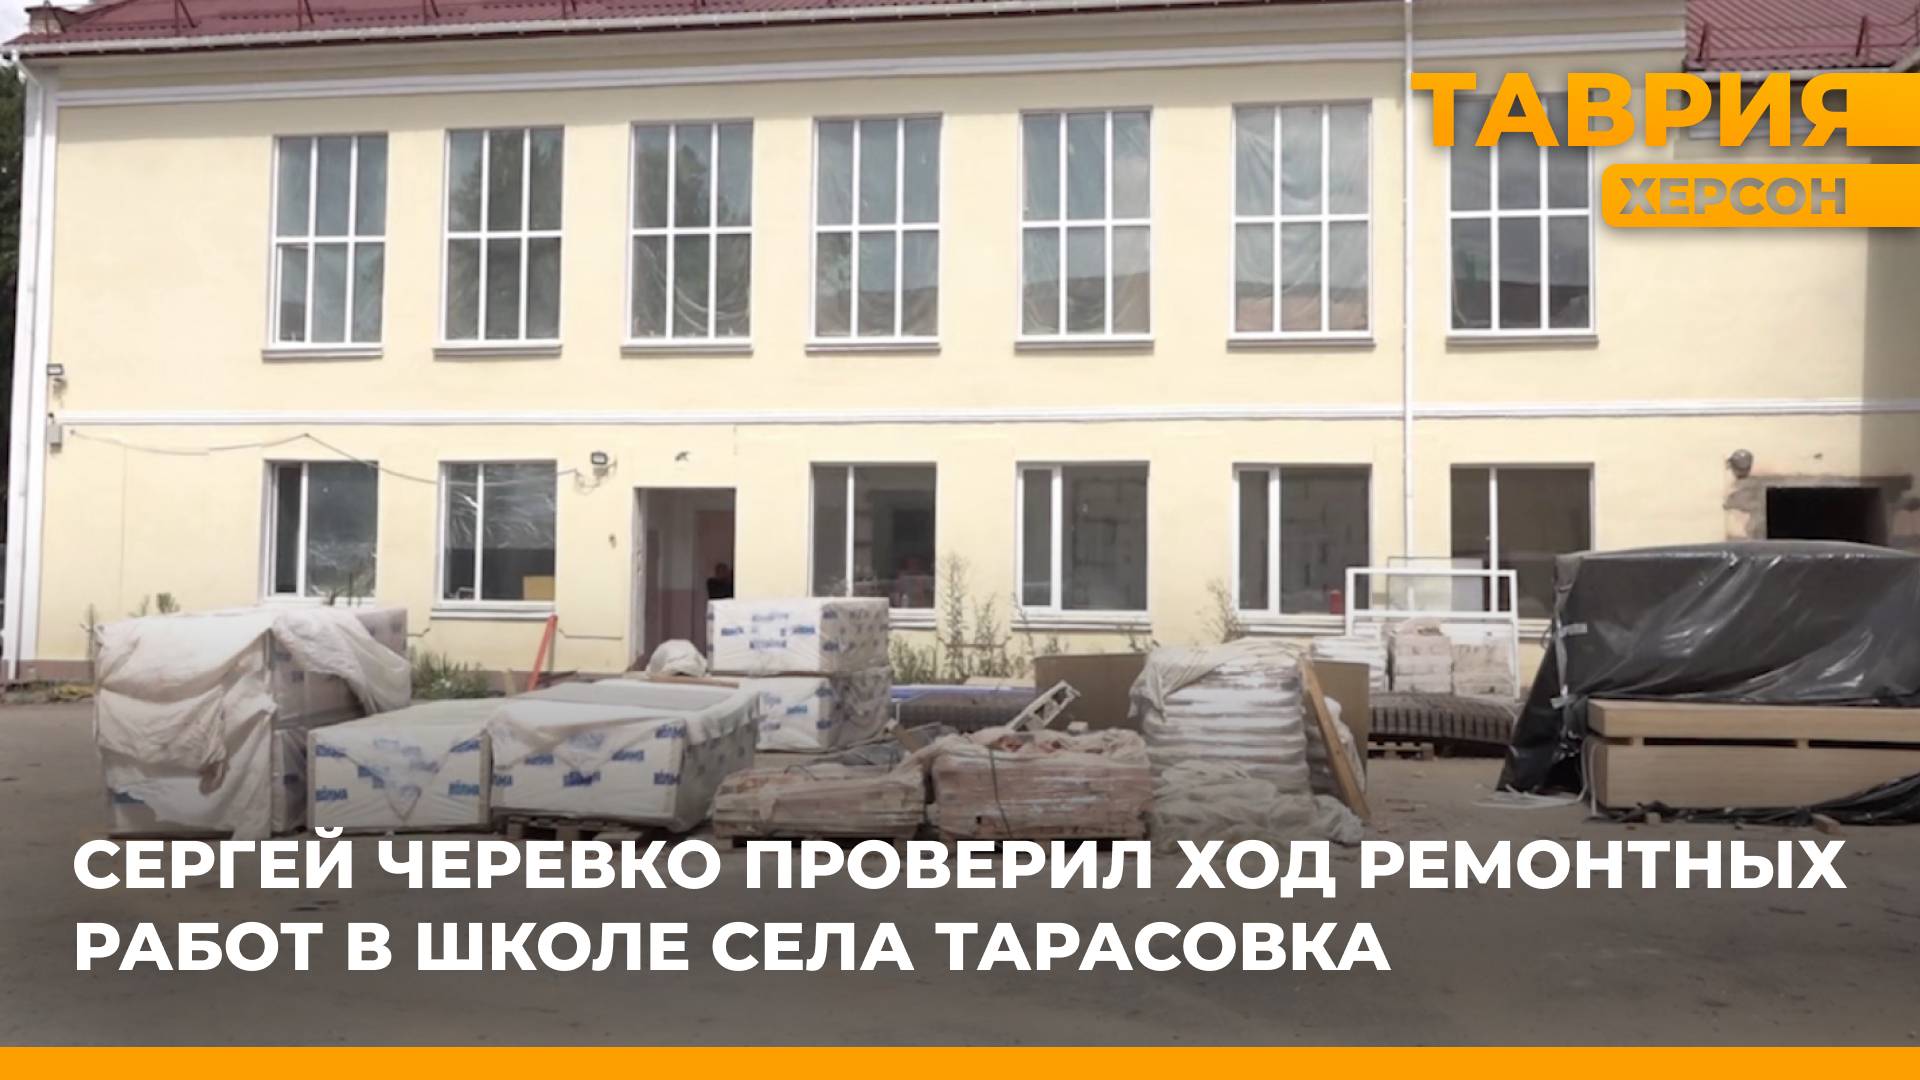 Сергей Черевко проверил ход ремонтных работ в школе села Тарасовка